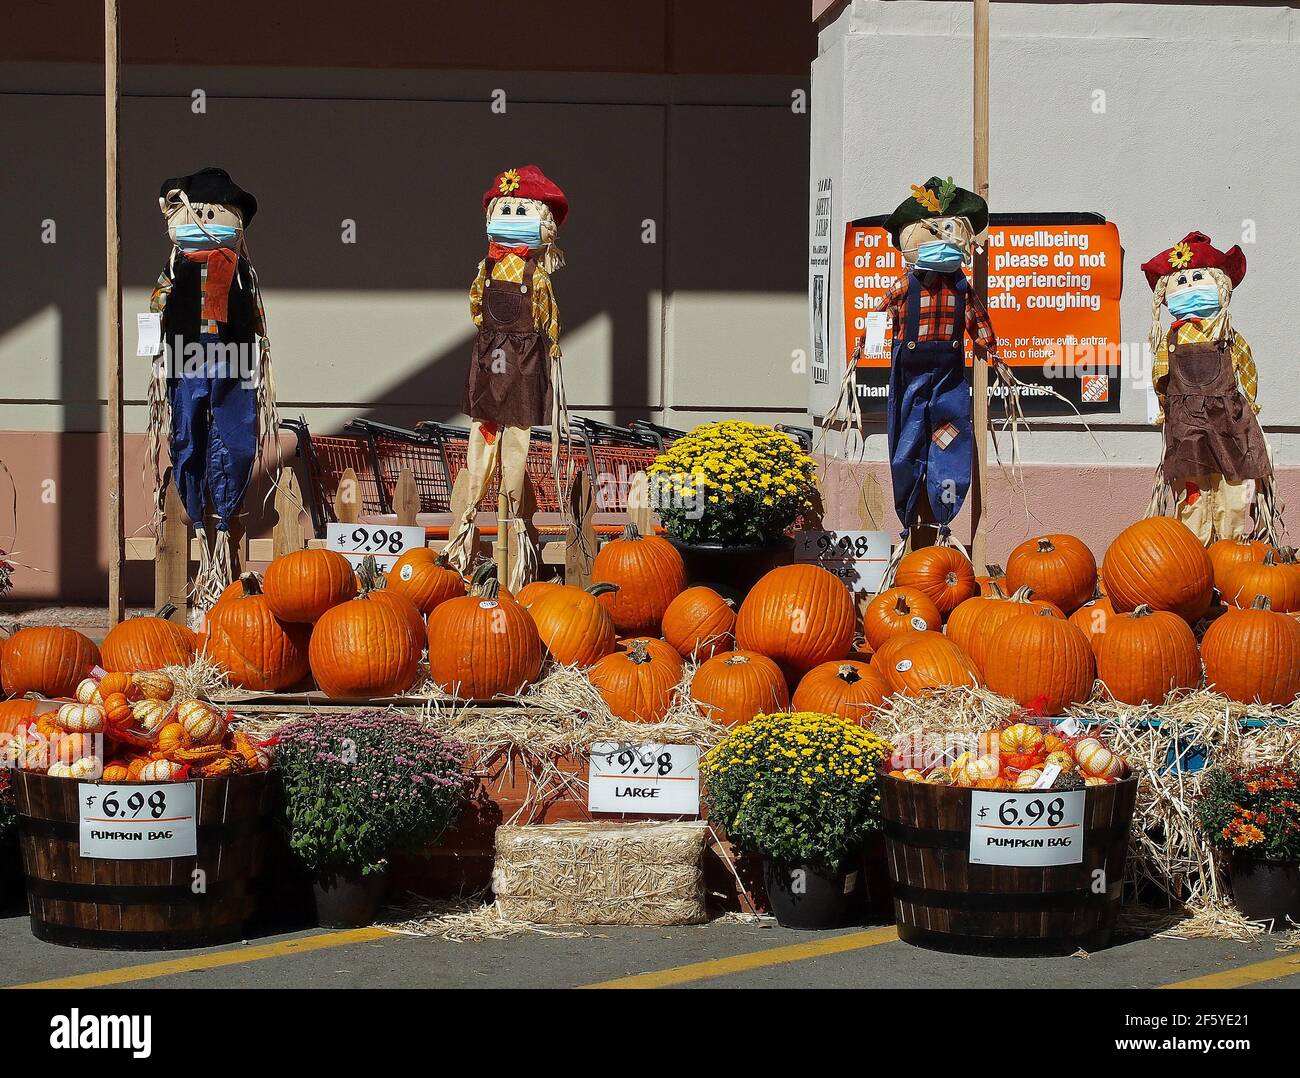 2020 calabazas de Halloween para la venta y espantapájaros con máscaras pandémicas en la tienda Home Depot en Union City, California, Foto de stock